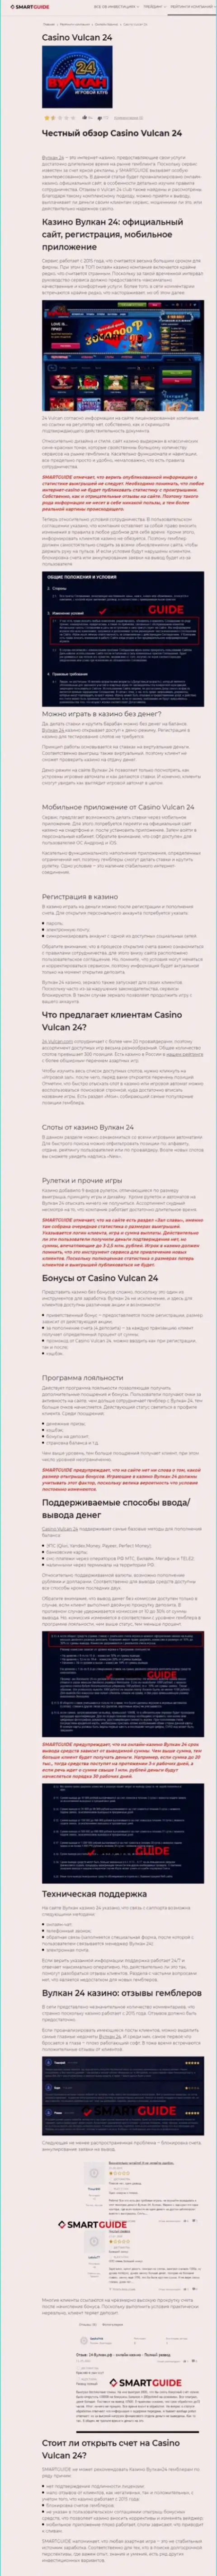 Wulkan-24 Com - это организация, которая зарабатывает на краже денежных вкладов собственных клиентов (обзор)